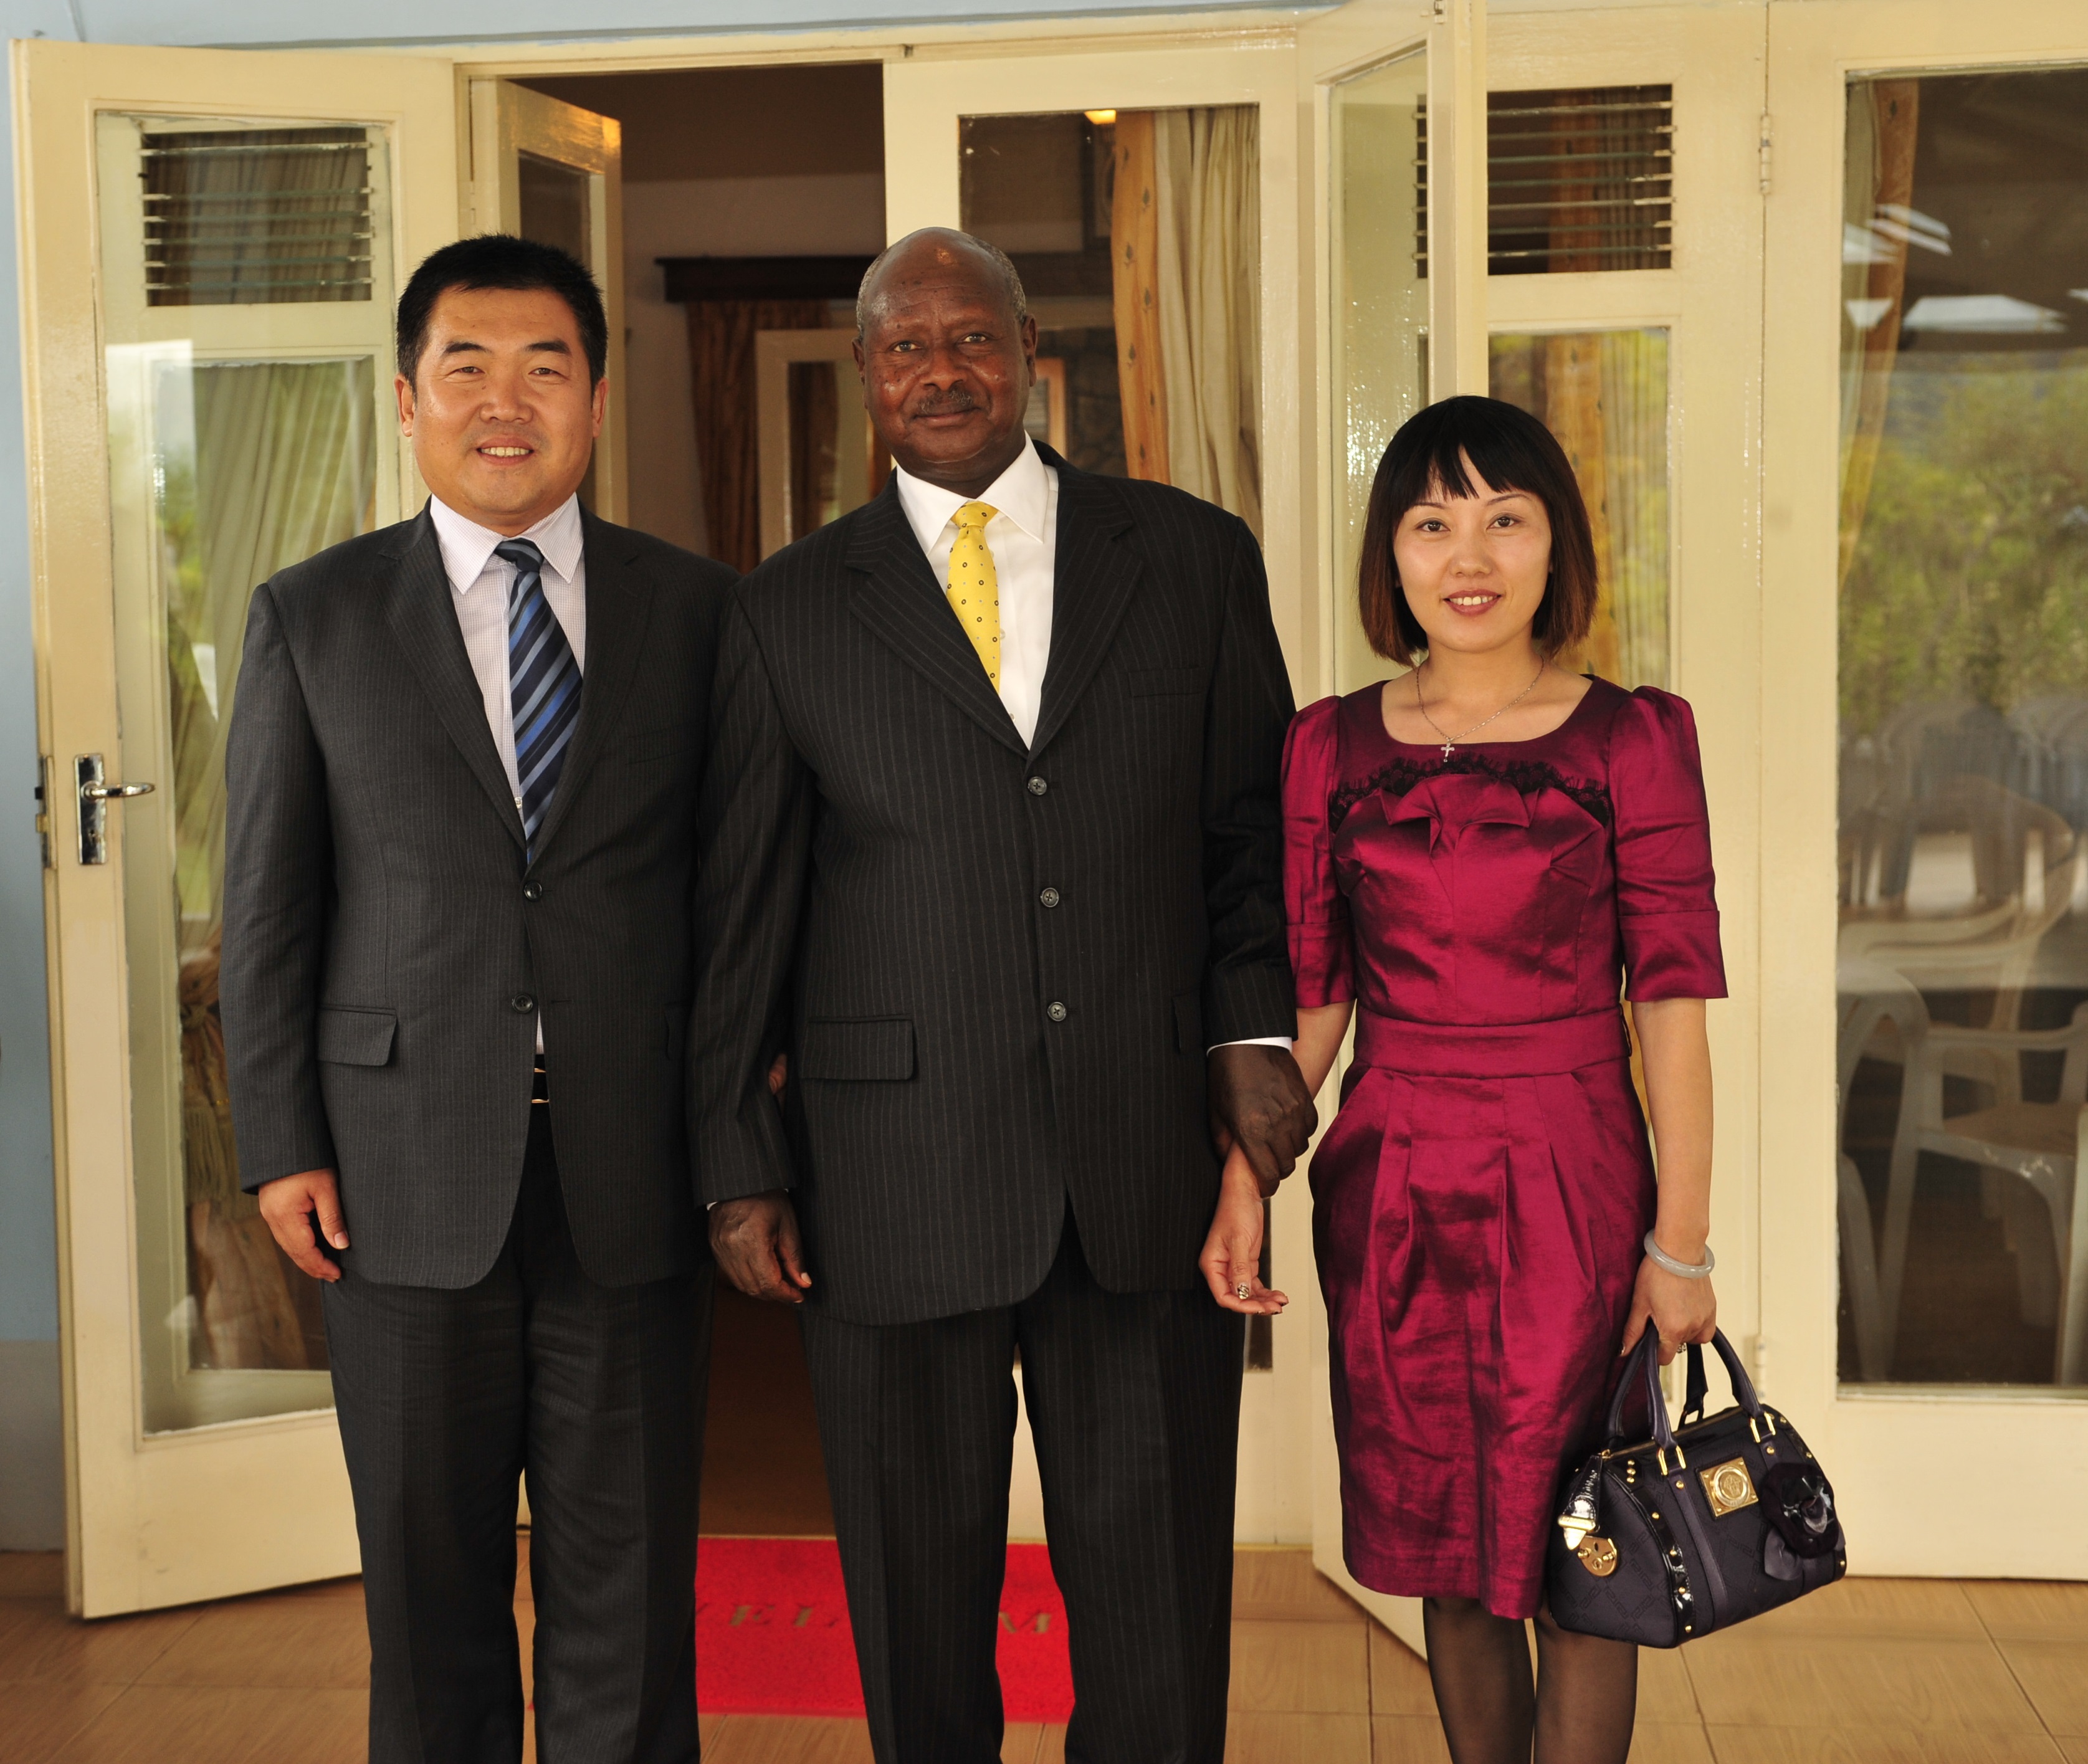 2010年12月7日乌干达总统私人会见集团董事长及其夫人